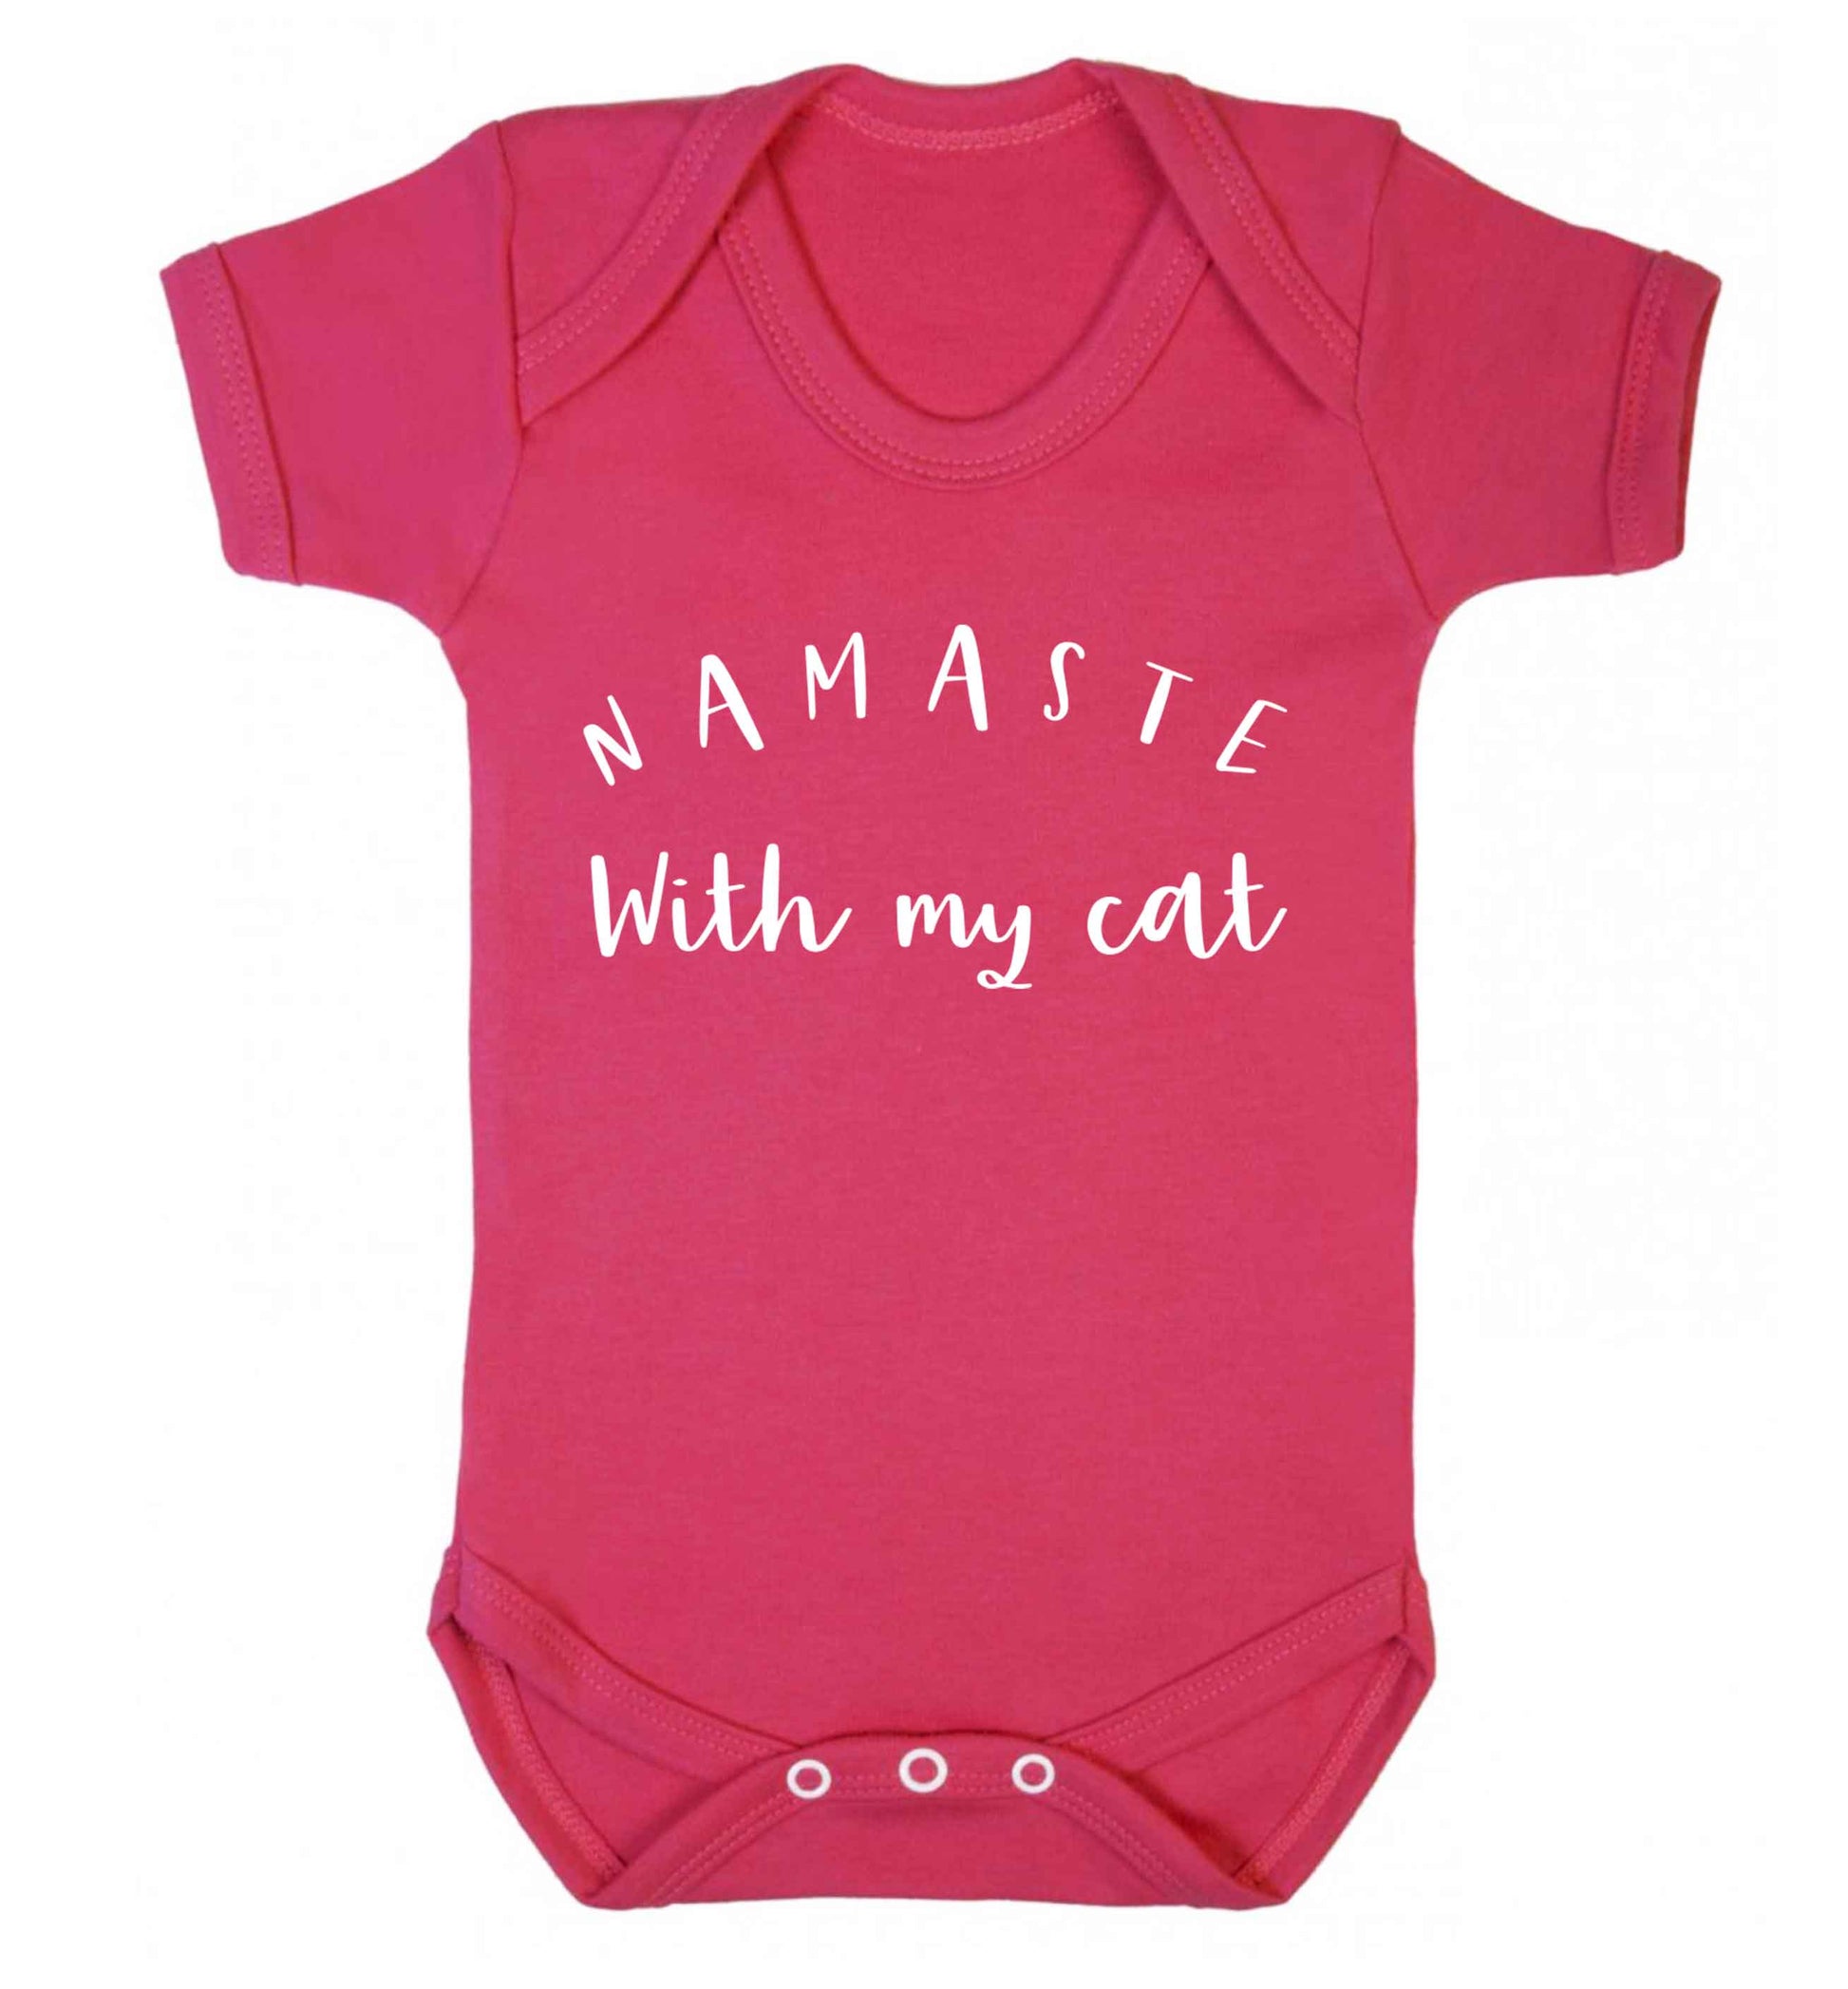 Namaste with my cat Baby Vest dark pink 18-24 months